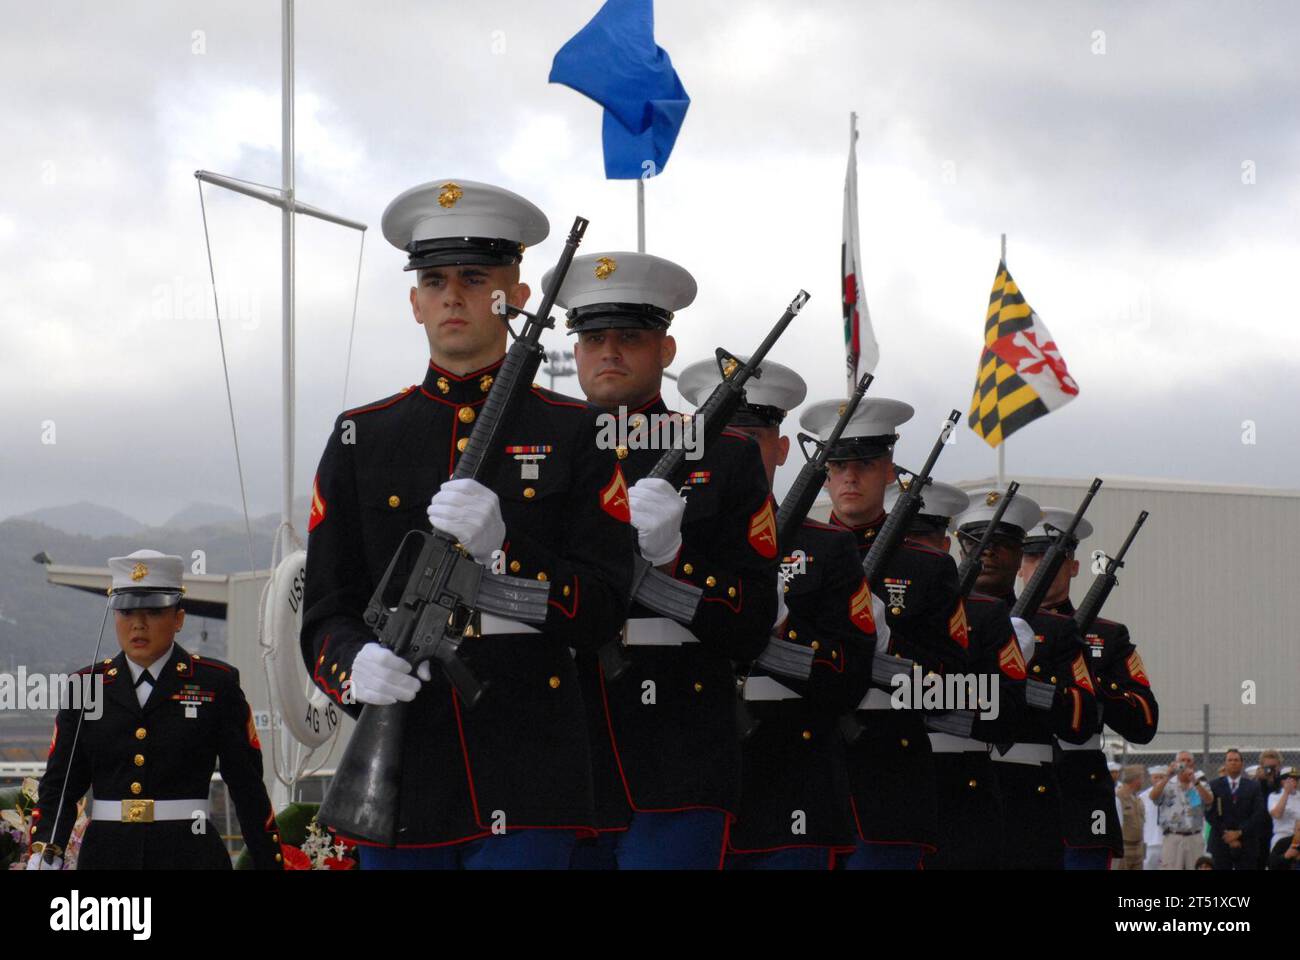 0612074965F-048 Pearl Harbor, Hawaii (7. Dezember 2006) - Marines, die dem Hauptquartier-Service-Bataillon in Camp Smith, Hawaii, zugewiesen wurden, um während einer gemeinsamen Zeremonie des U.S. Navy/National Park Service zum 65. Jahrestag des Angriffs auf Pearl Harbor einen Gewehrsalut zu erhalten. Mehr als 1.500 Überlebende aus Pearl Harbor, ihre Familien und Freunde aus dem ganzen Land schlossen sich mehr als 2.000 angesehene Gäste und die breite Öffentlichkeit zur jährlichen Feier an. US Navy Stockfoto